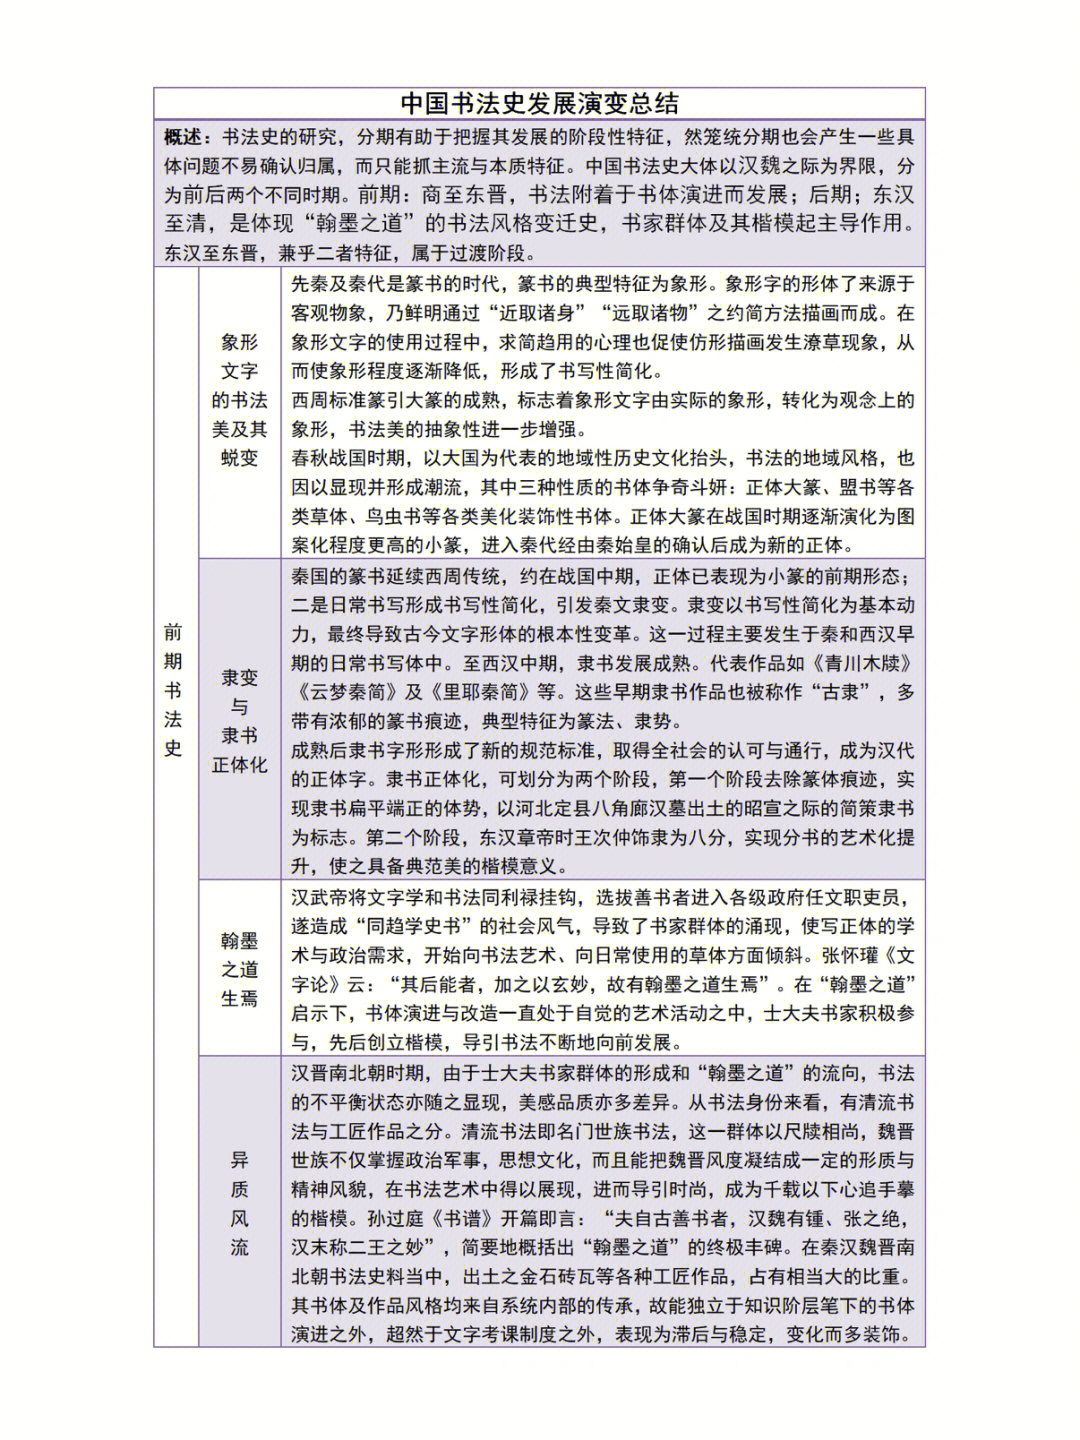 发展演变9297内容主要参考七卷本《中国书法史》先秦&秦代卷本的